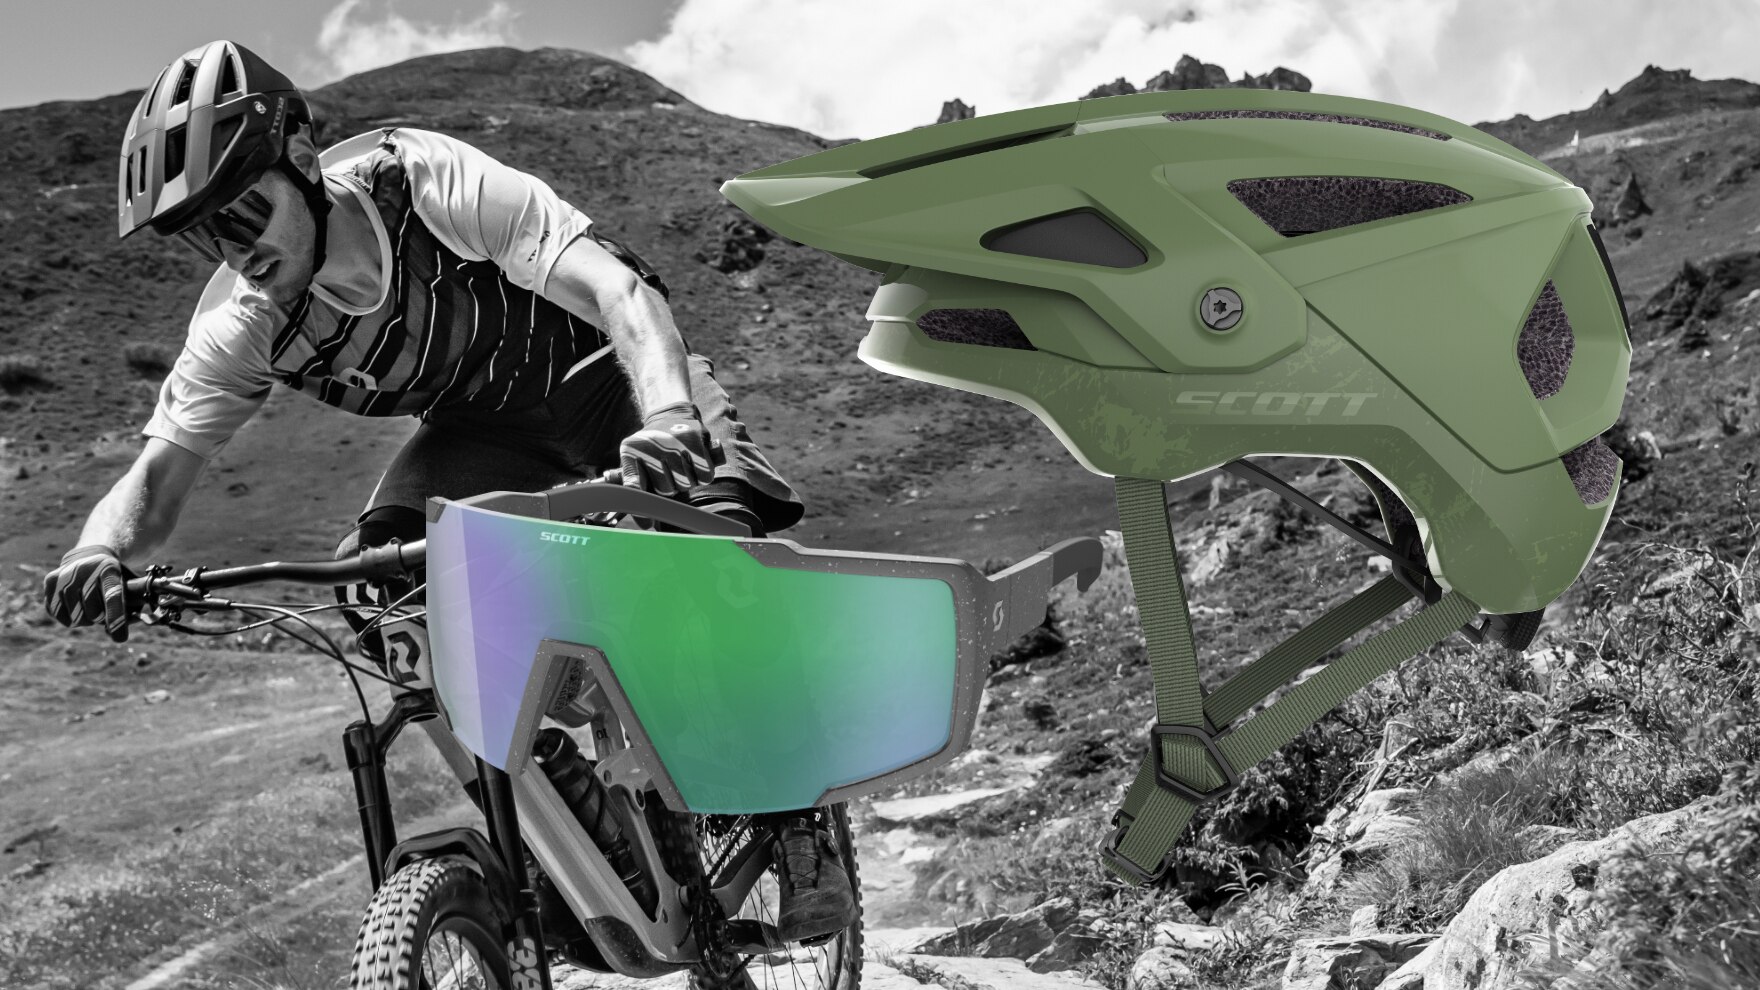  Mit dem Scott Stego Plus Helm und der Scott Shield Sonnenbrille bist du perfekt ausgerüstet für das nächstes Trail-Abenteuer.